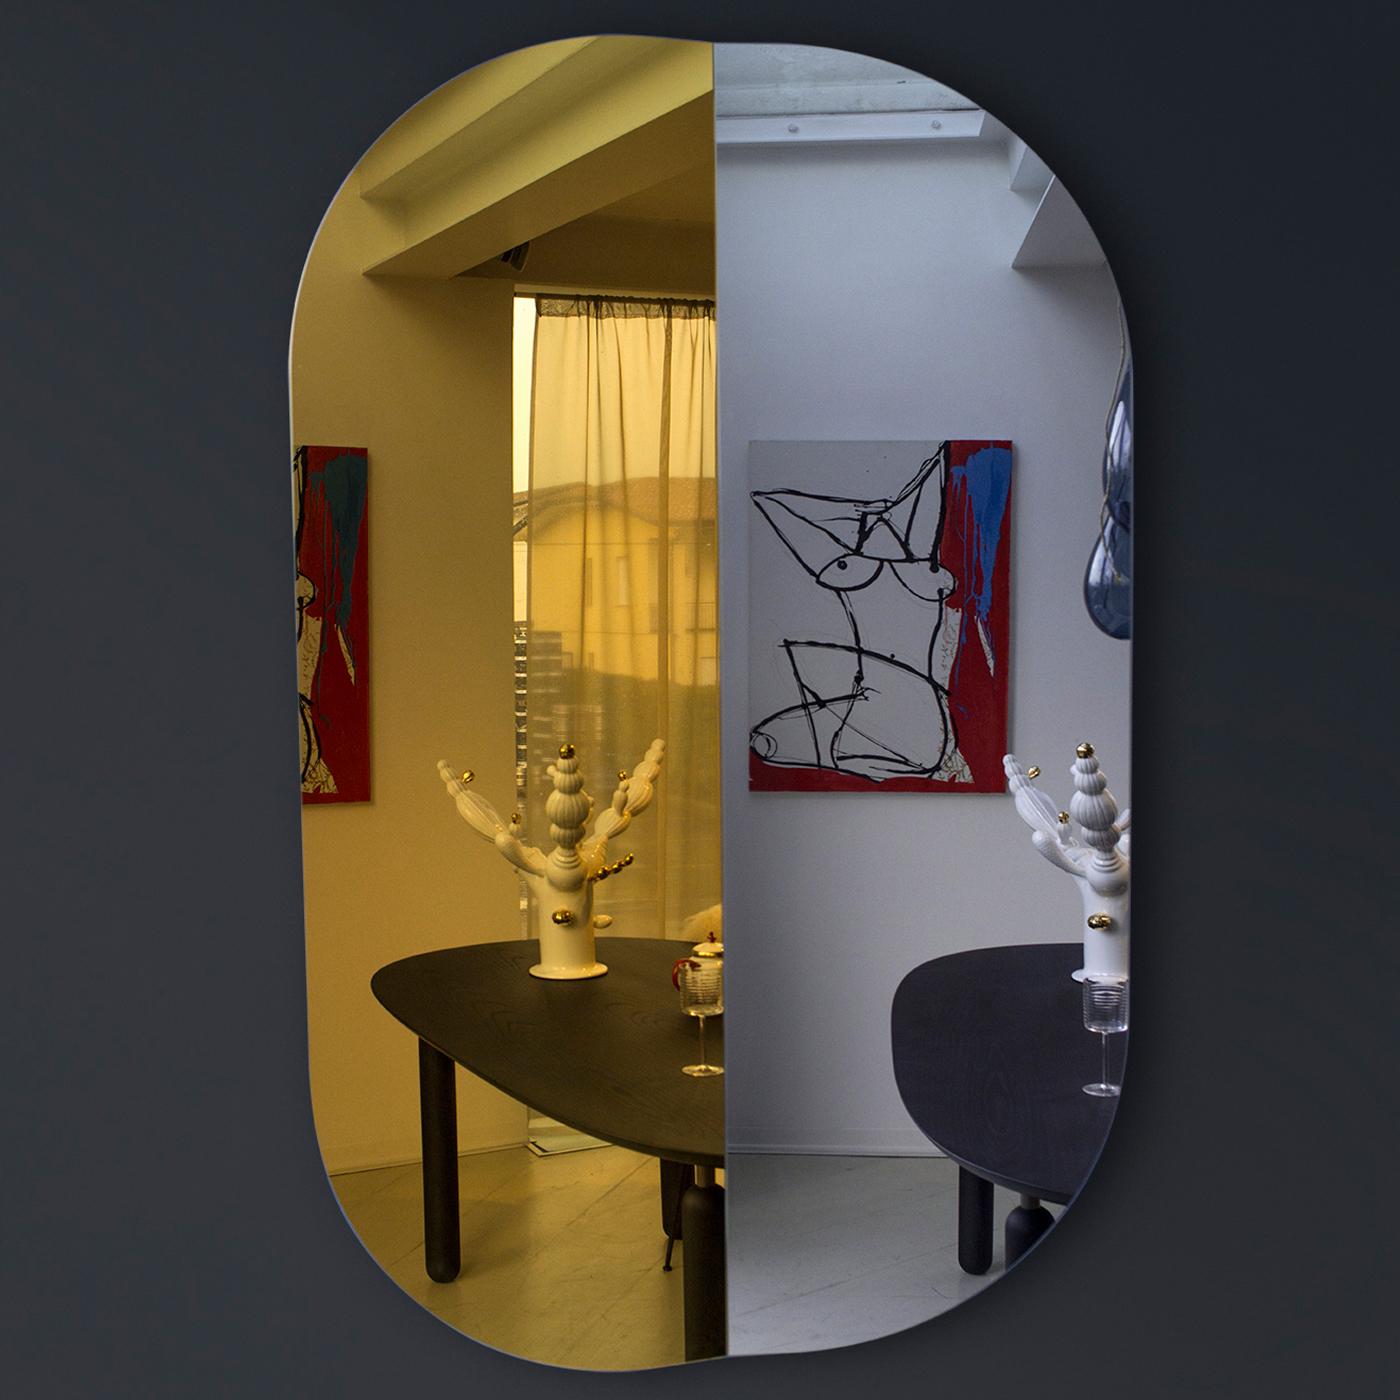 Bent wurde von Matteo Zorzenoni entworfen und verleiht dem traditionellen Spiegeldesign ein glamouröses Flair, das ein raffiniertes und funktionelles Statement in einem modernen und zeitgenössischen Zuhause darstellt. Die faszinierende Konstruktion